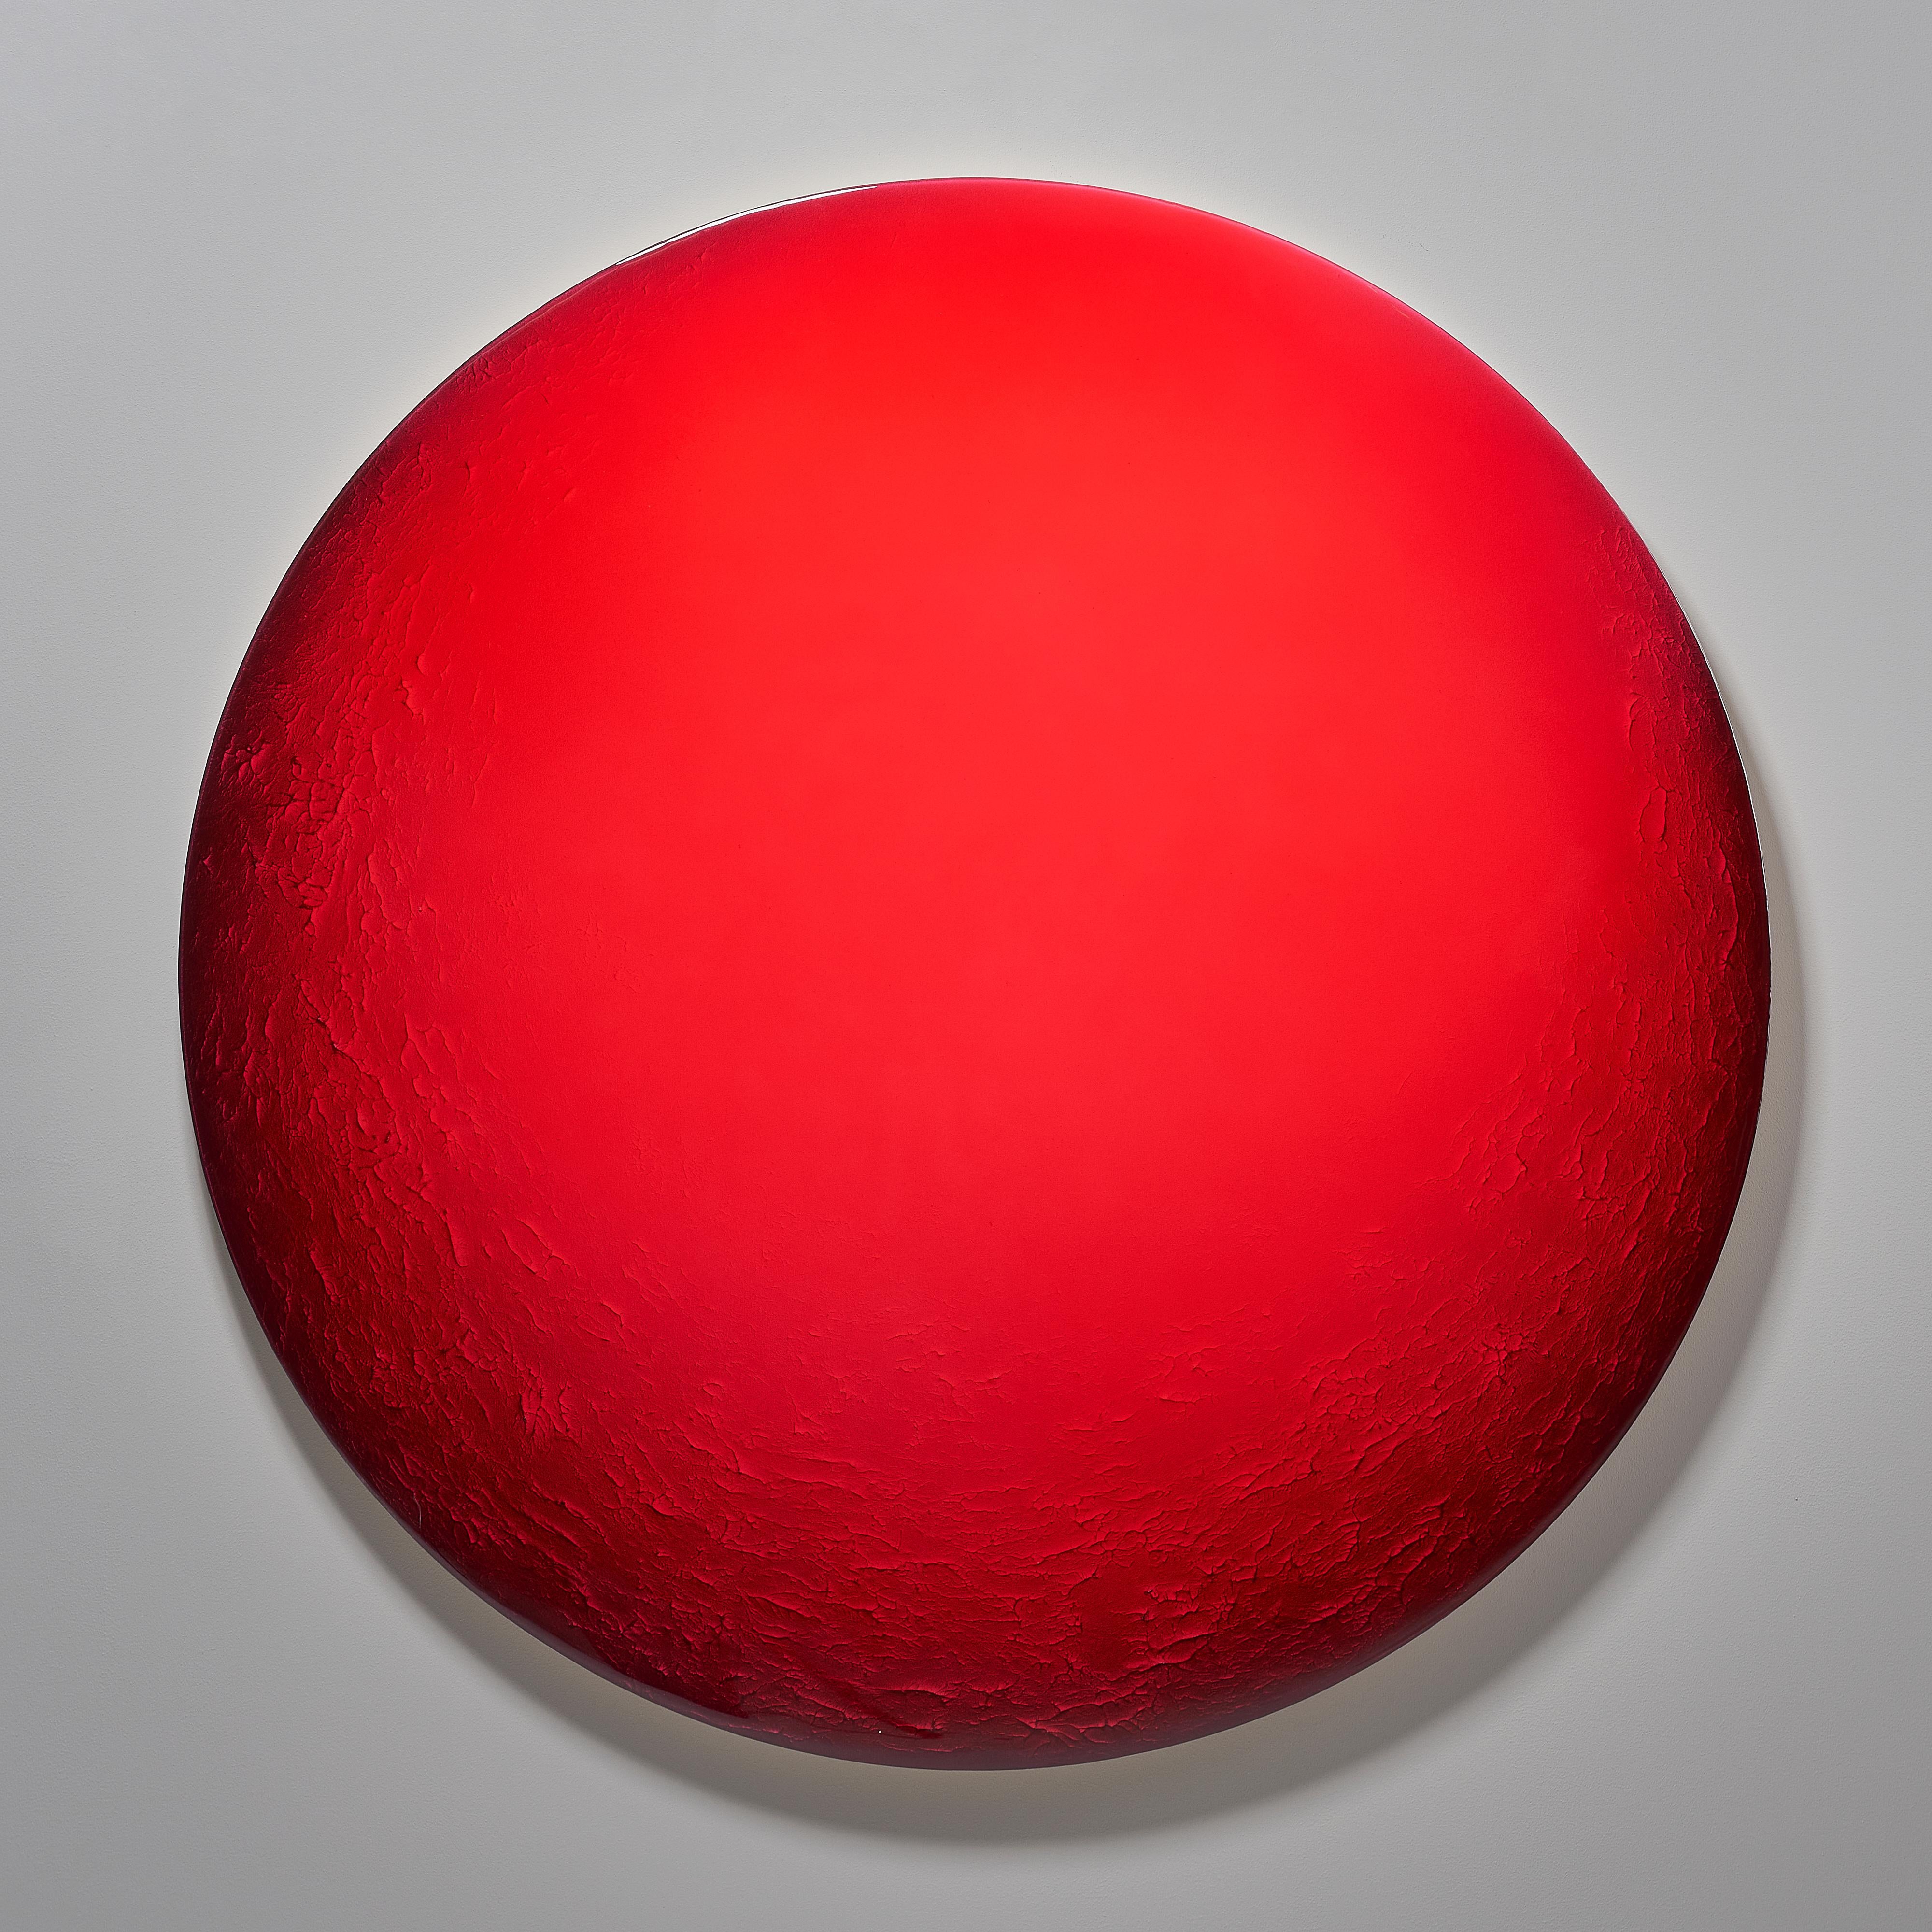 Une ronde minimaliste et dure sur les bords, par Corine Vanvoorbergen
Dimensions : diamètre 150 cm
Matériaux : Laiton, bois, pigments naturels, époxy, acrylique.

Vous pouvez toujours m'embrasser, je suis doux si vous vous approchez